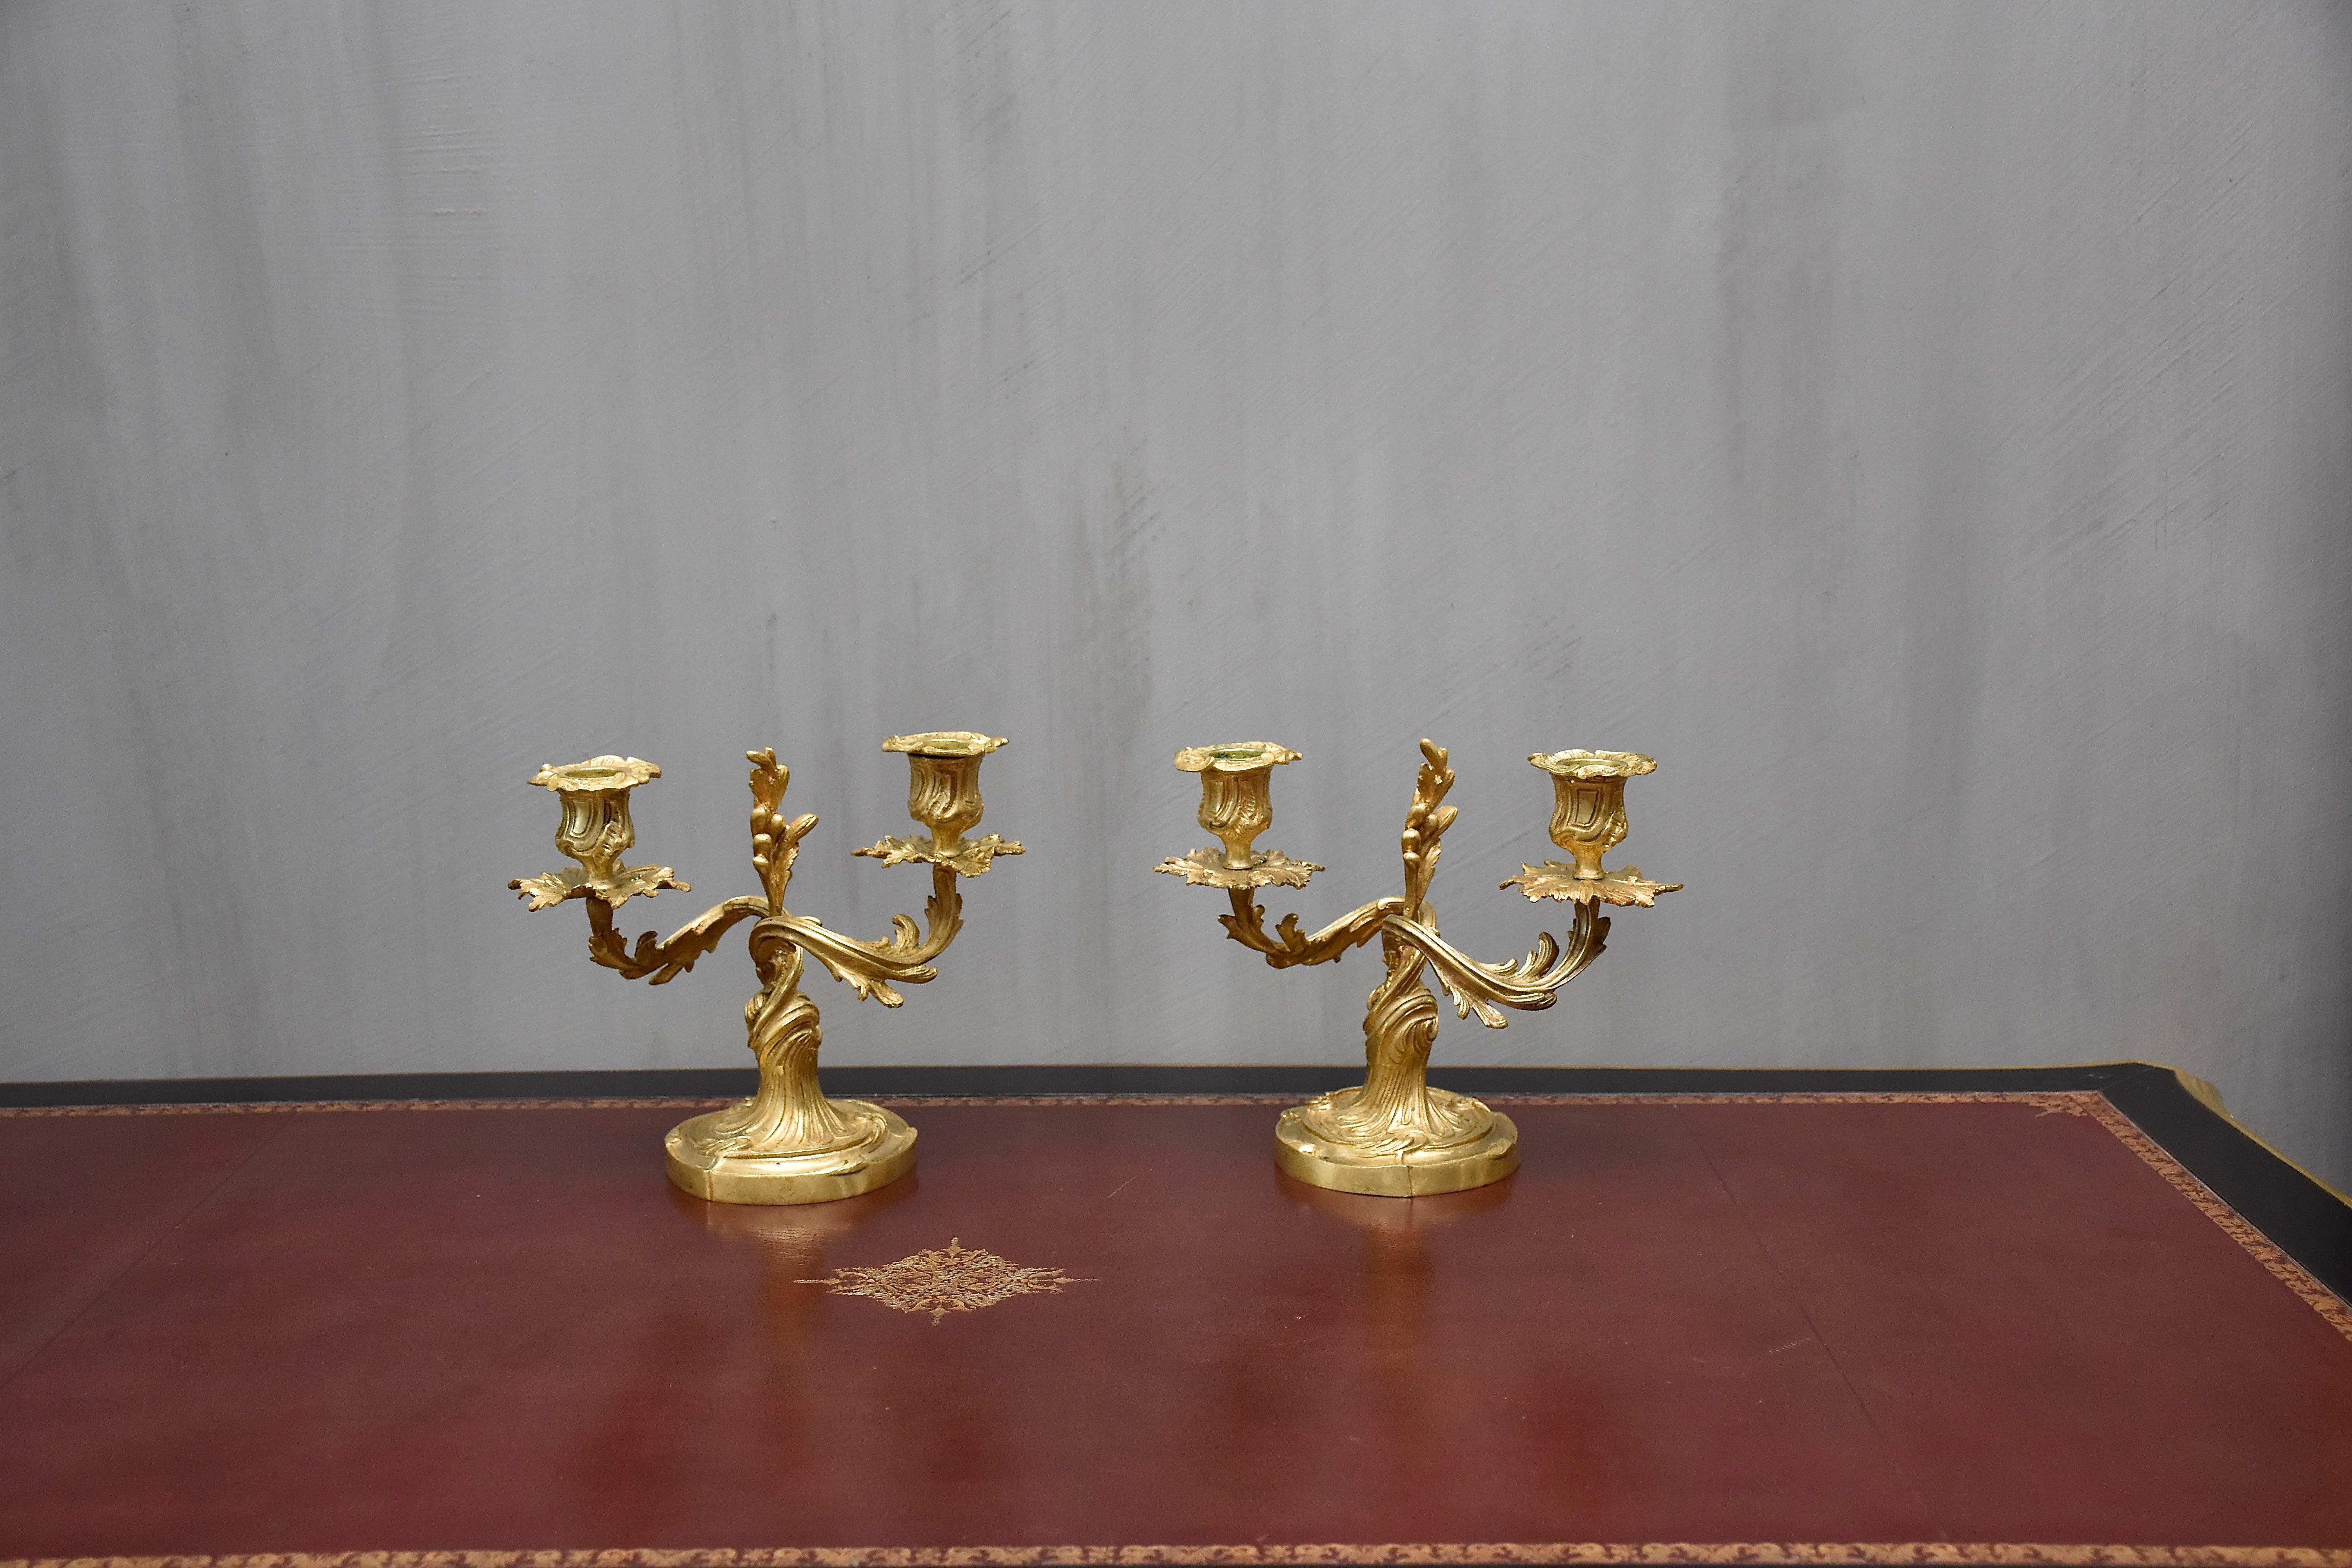 Ein sehr hübsches Paar französischer Kandelaber aus vergoldeter Bronze im Stil von Louis XV.
Jeweils mit zwei Kerzenlicht.
Verziert mit Blattmotiven und Akanthusblättern. 